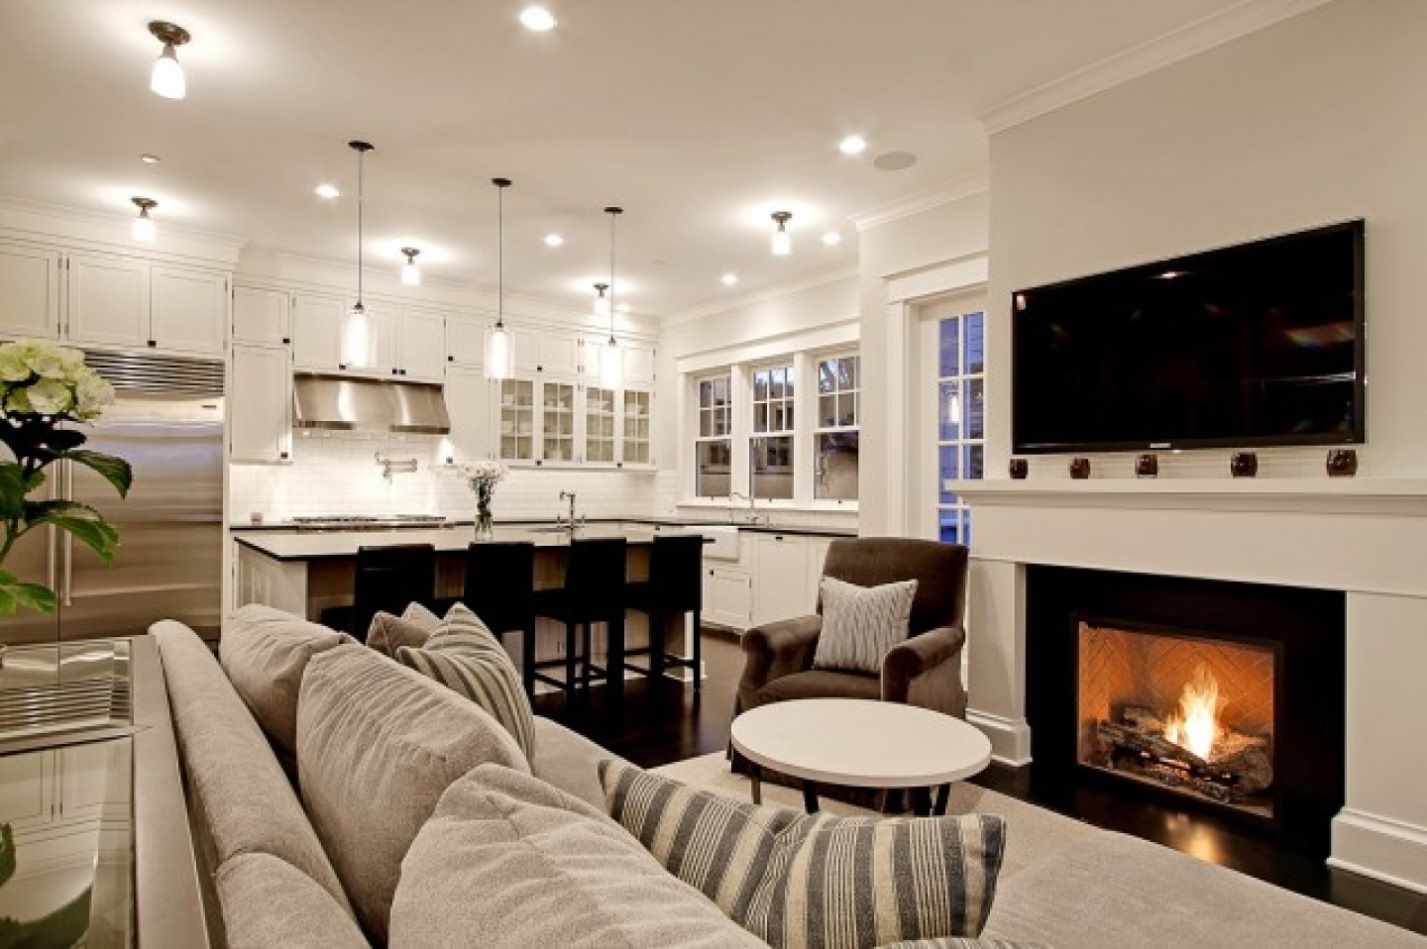 مثال على تطبيق ديكور جميل لغرفة المعيشة مع مدفأة